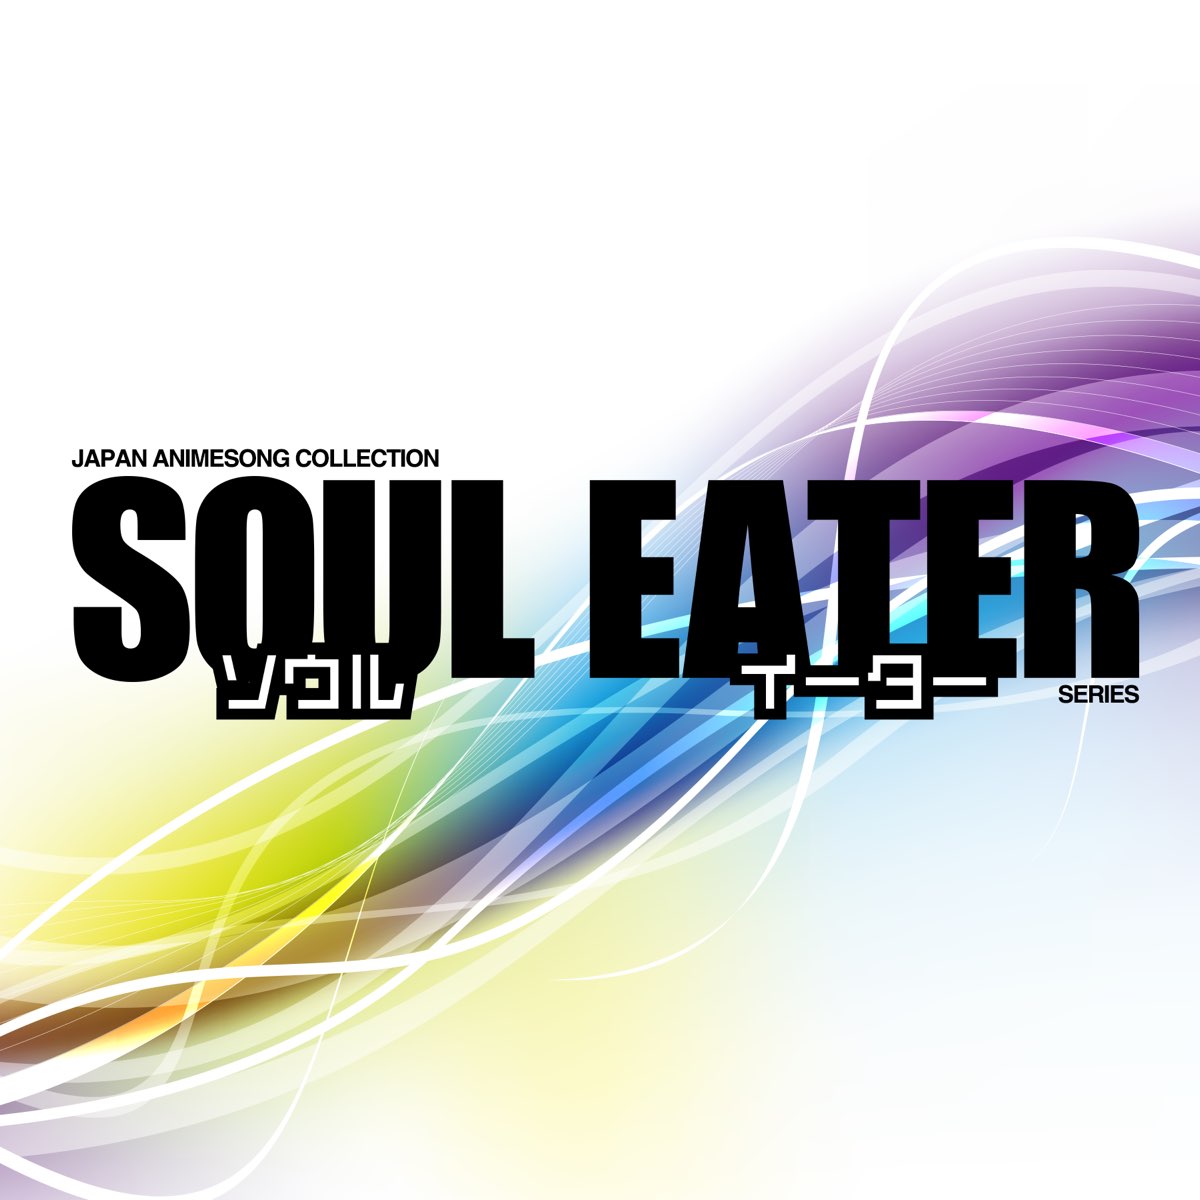 Soul Eater Resonance codes